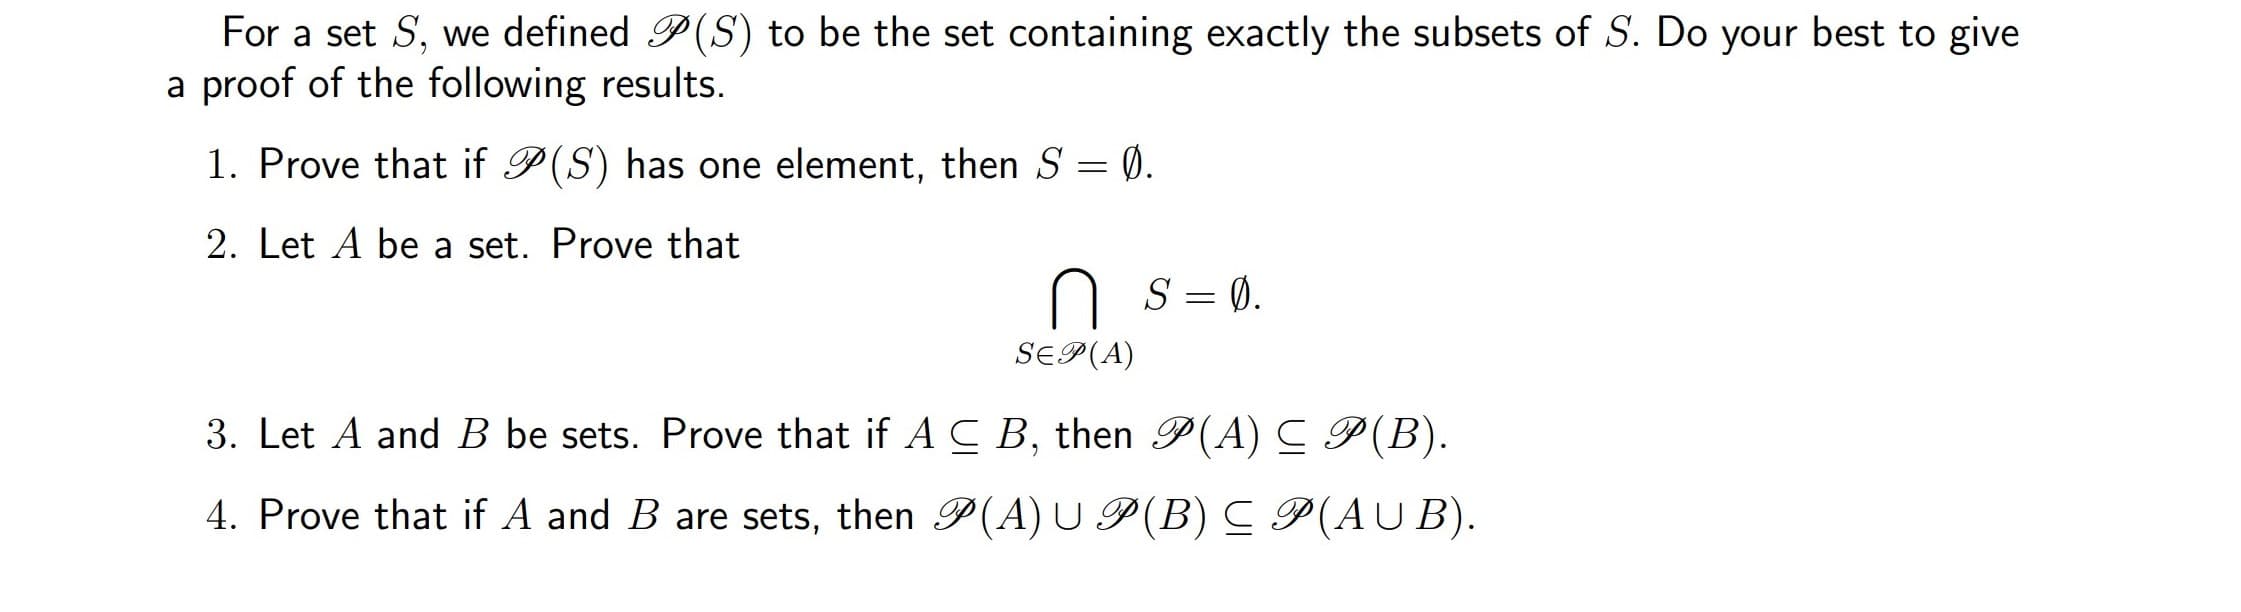 Prove that if A and B are sets, then P(A) U P (B) C P(AUB).
